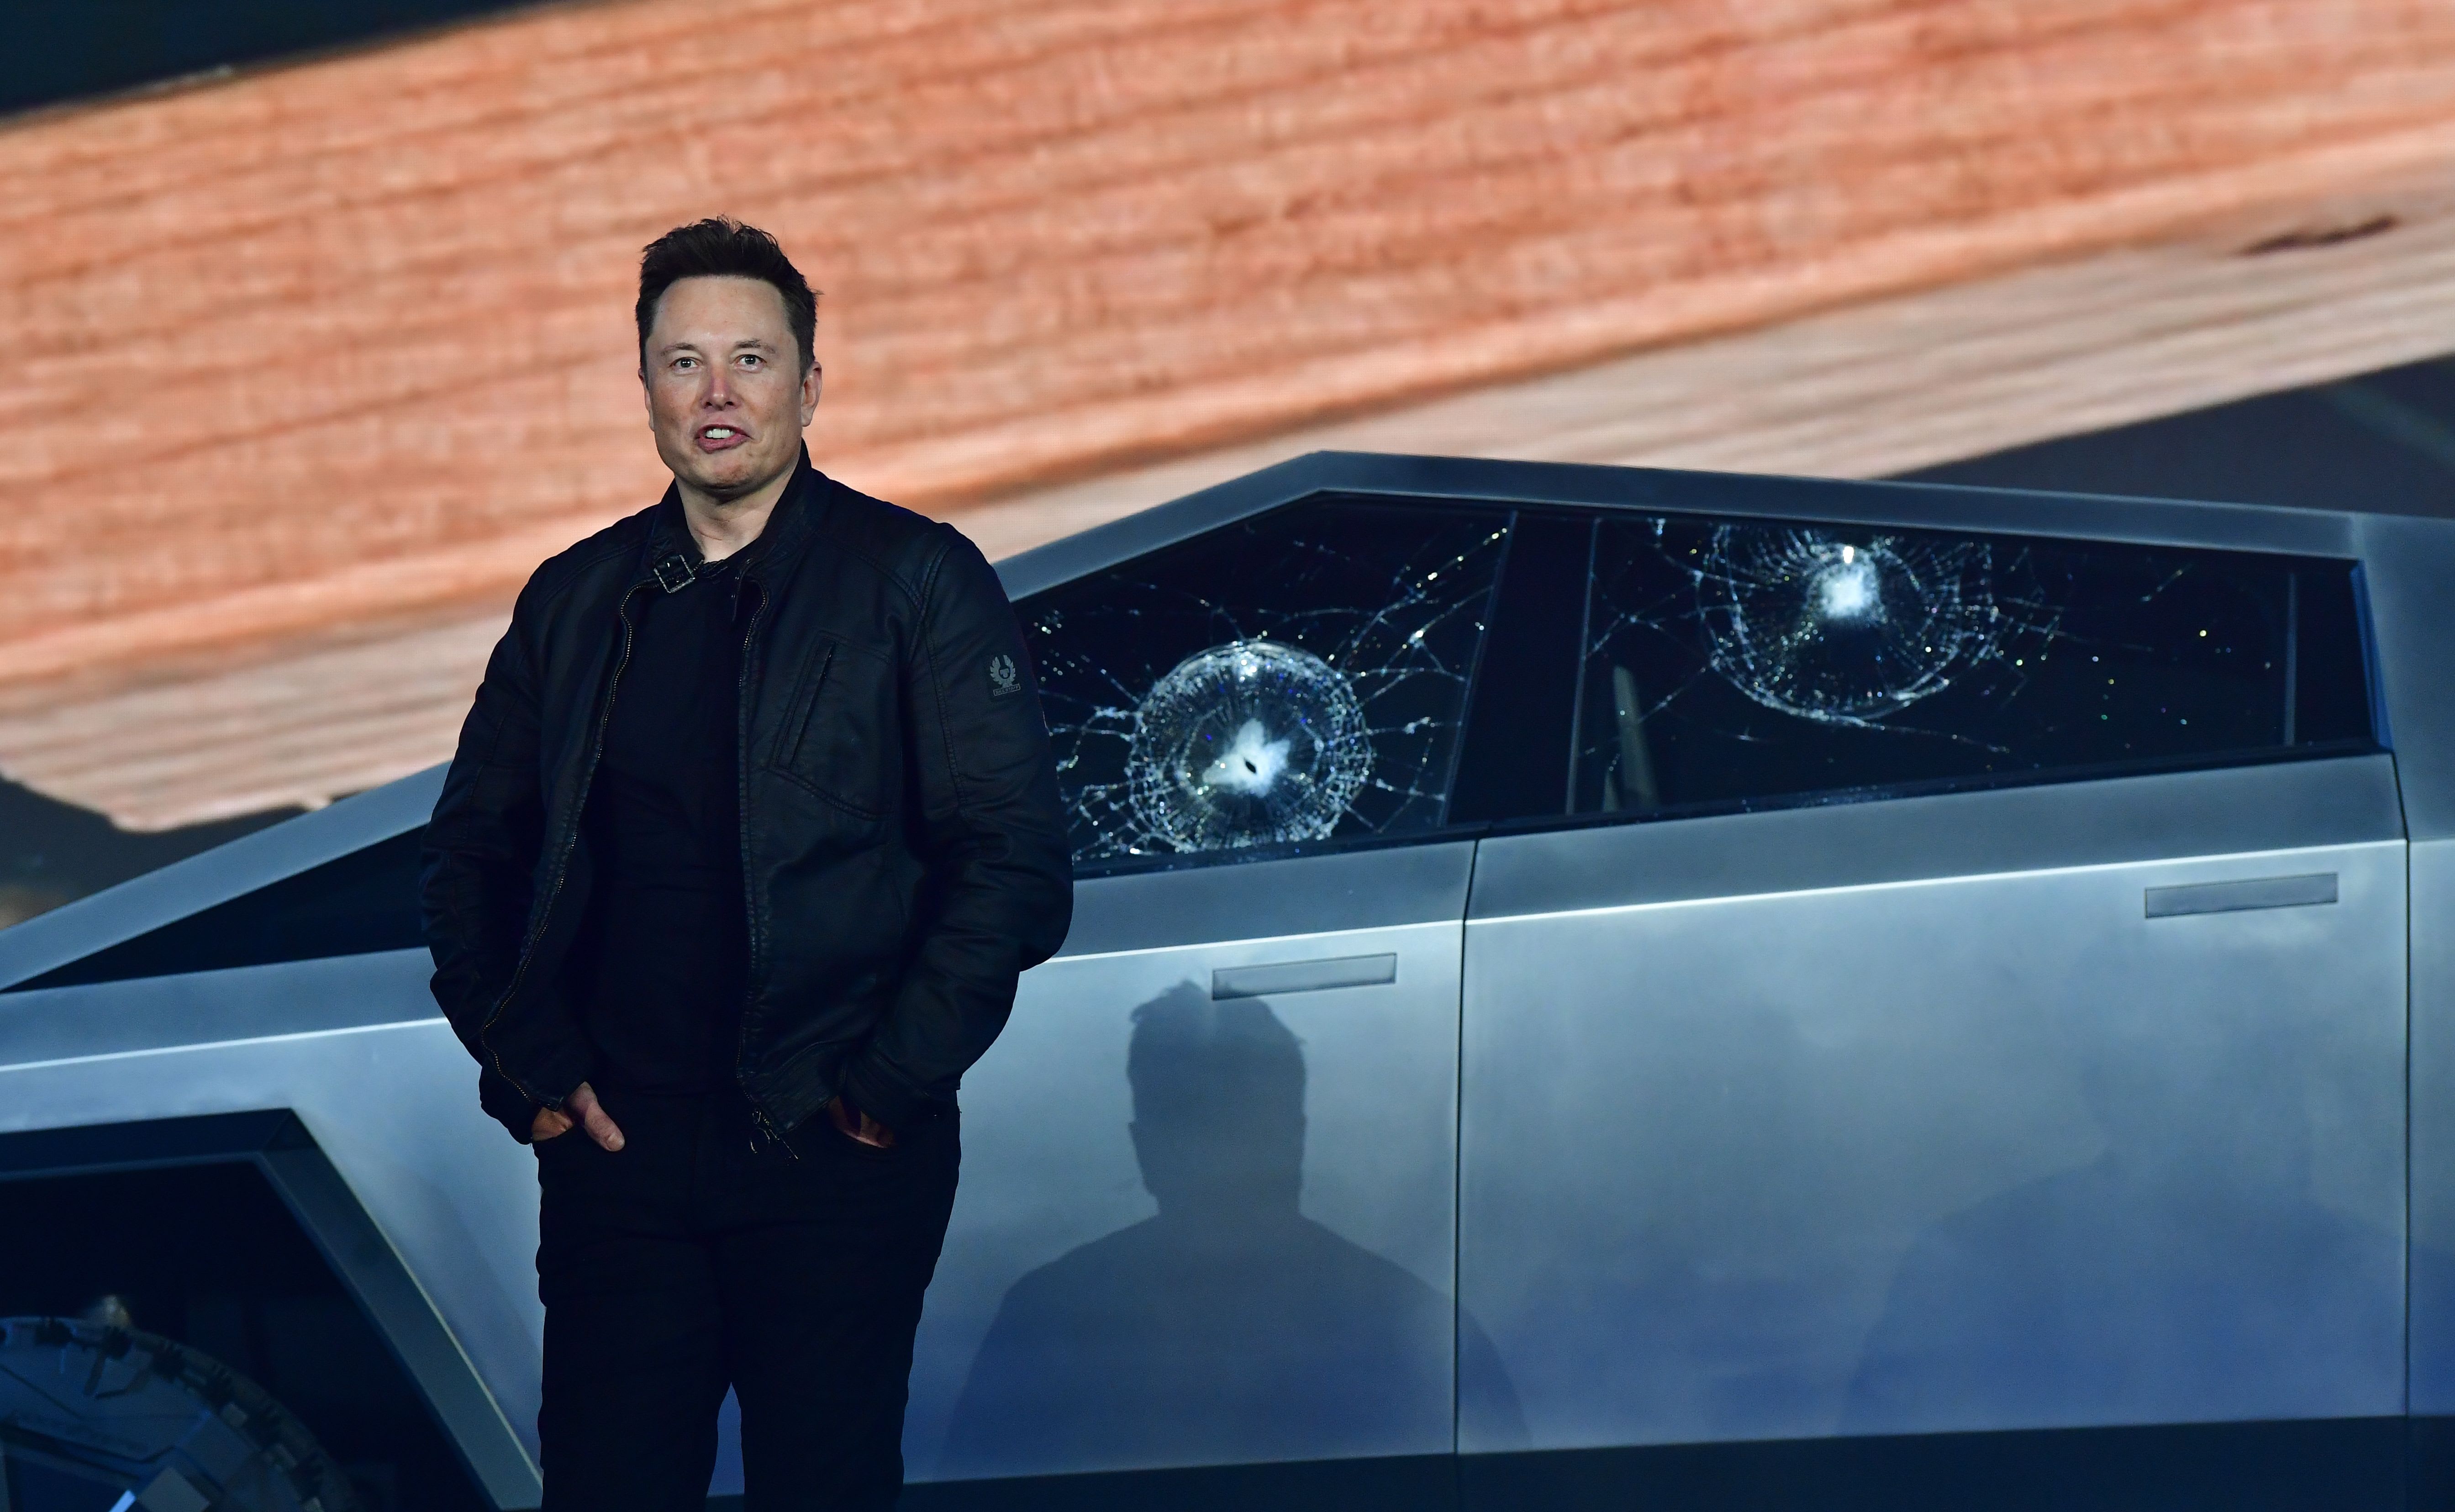 Wall Road on Tesla’s new pickup: ‘Cybertruck seems bizarre’